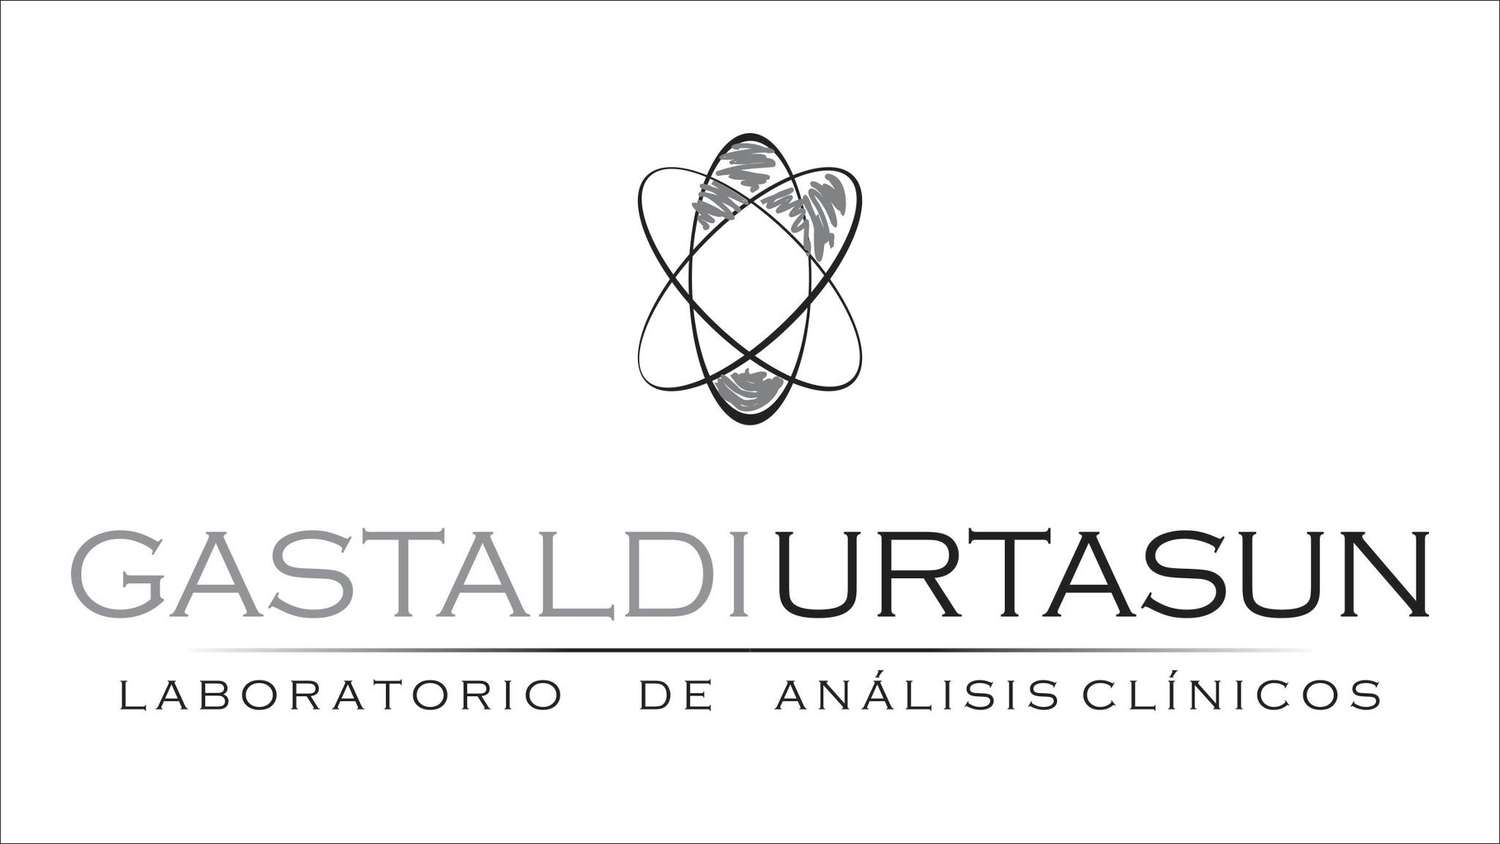 El Laboratorio Gastaldi-Urtasun cuenta con los test rápidos